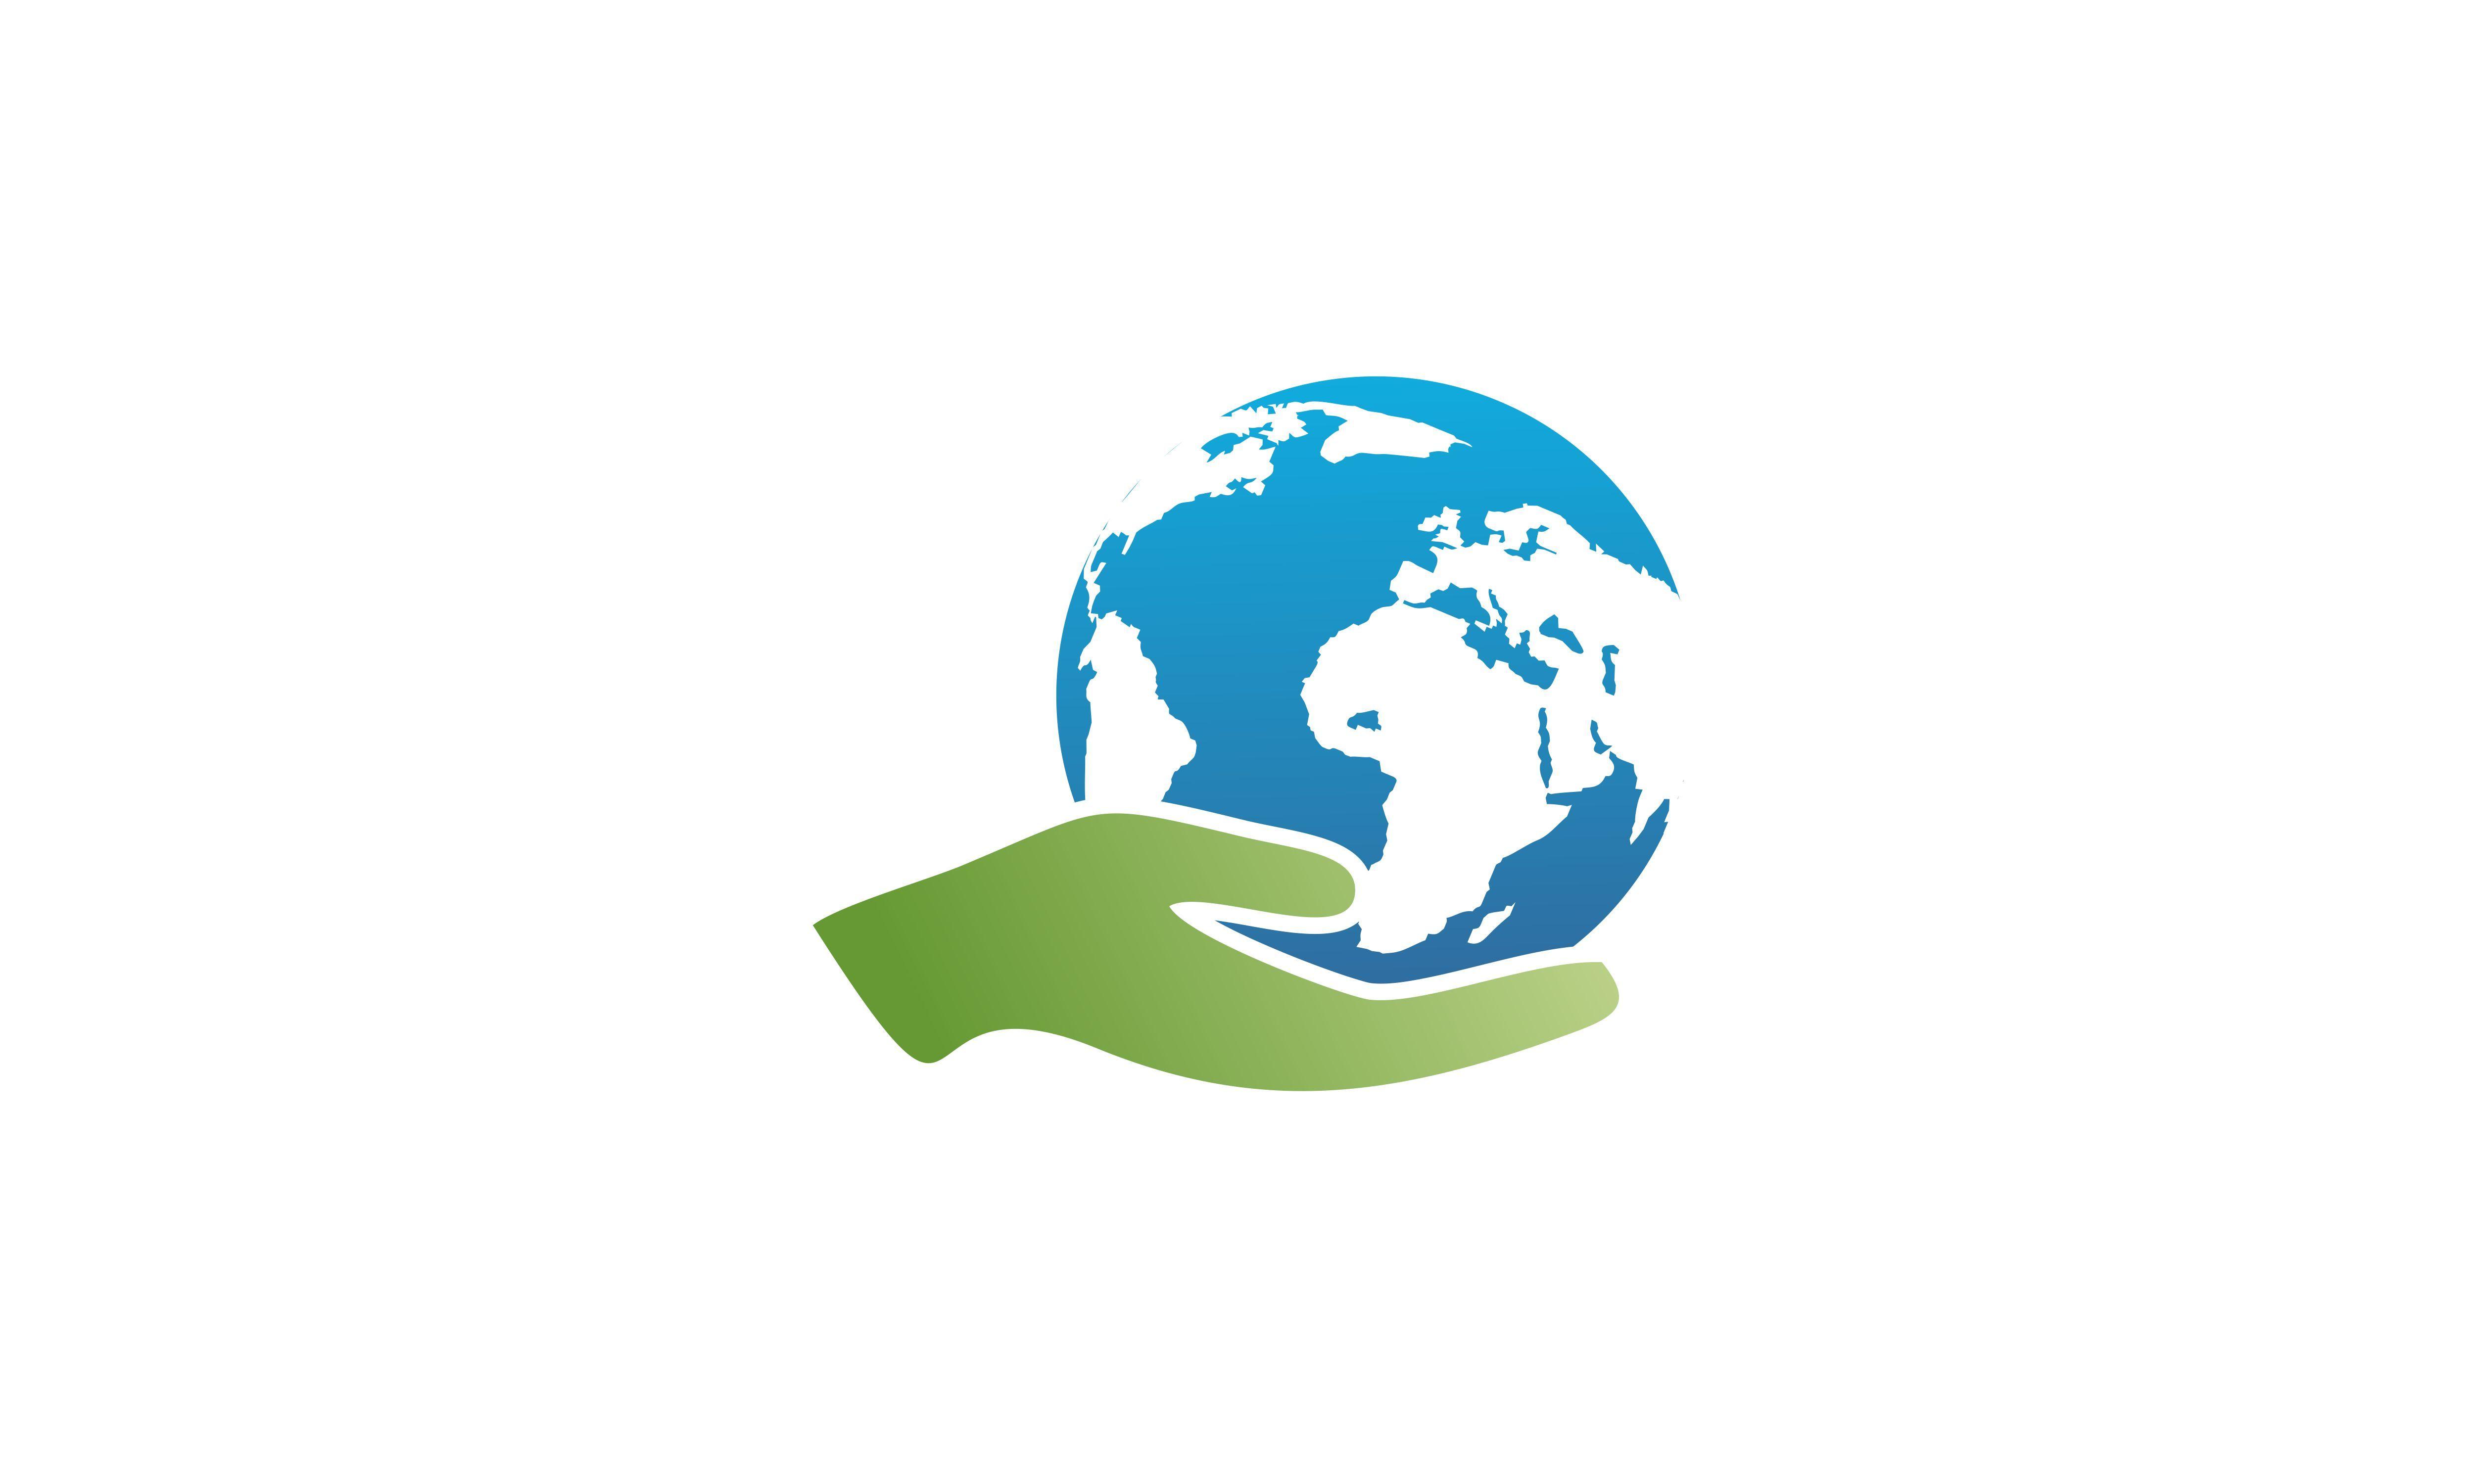 World Globe Logo - Hand Care, World, Globe Logo Graphic